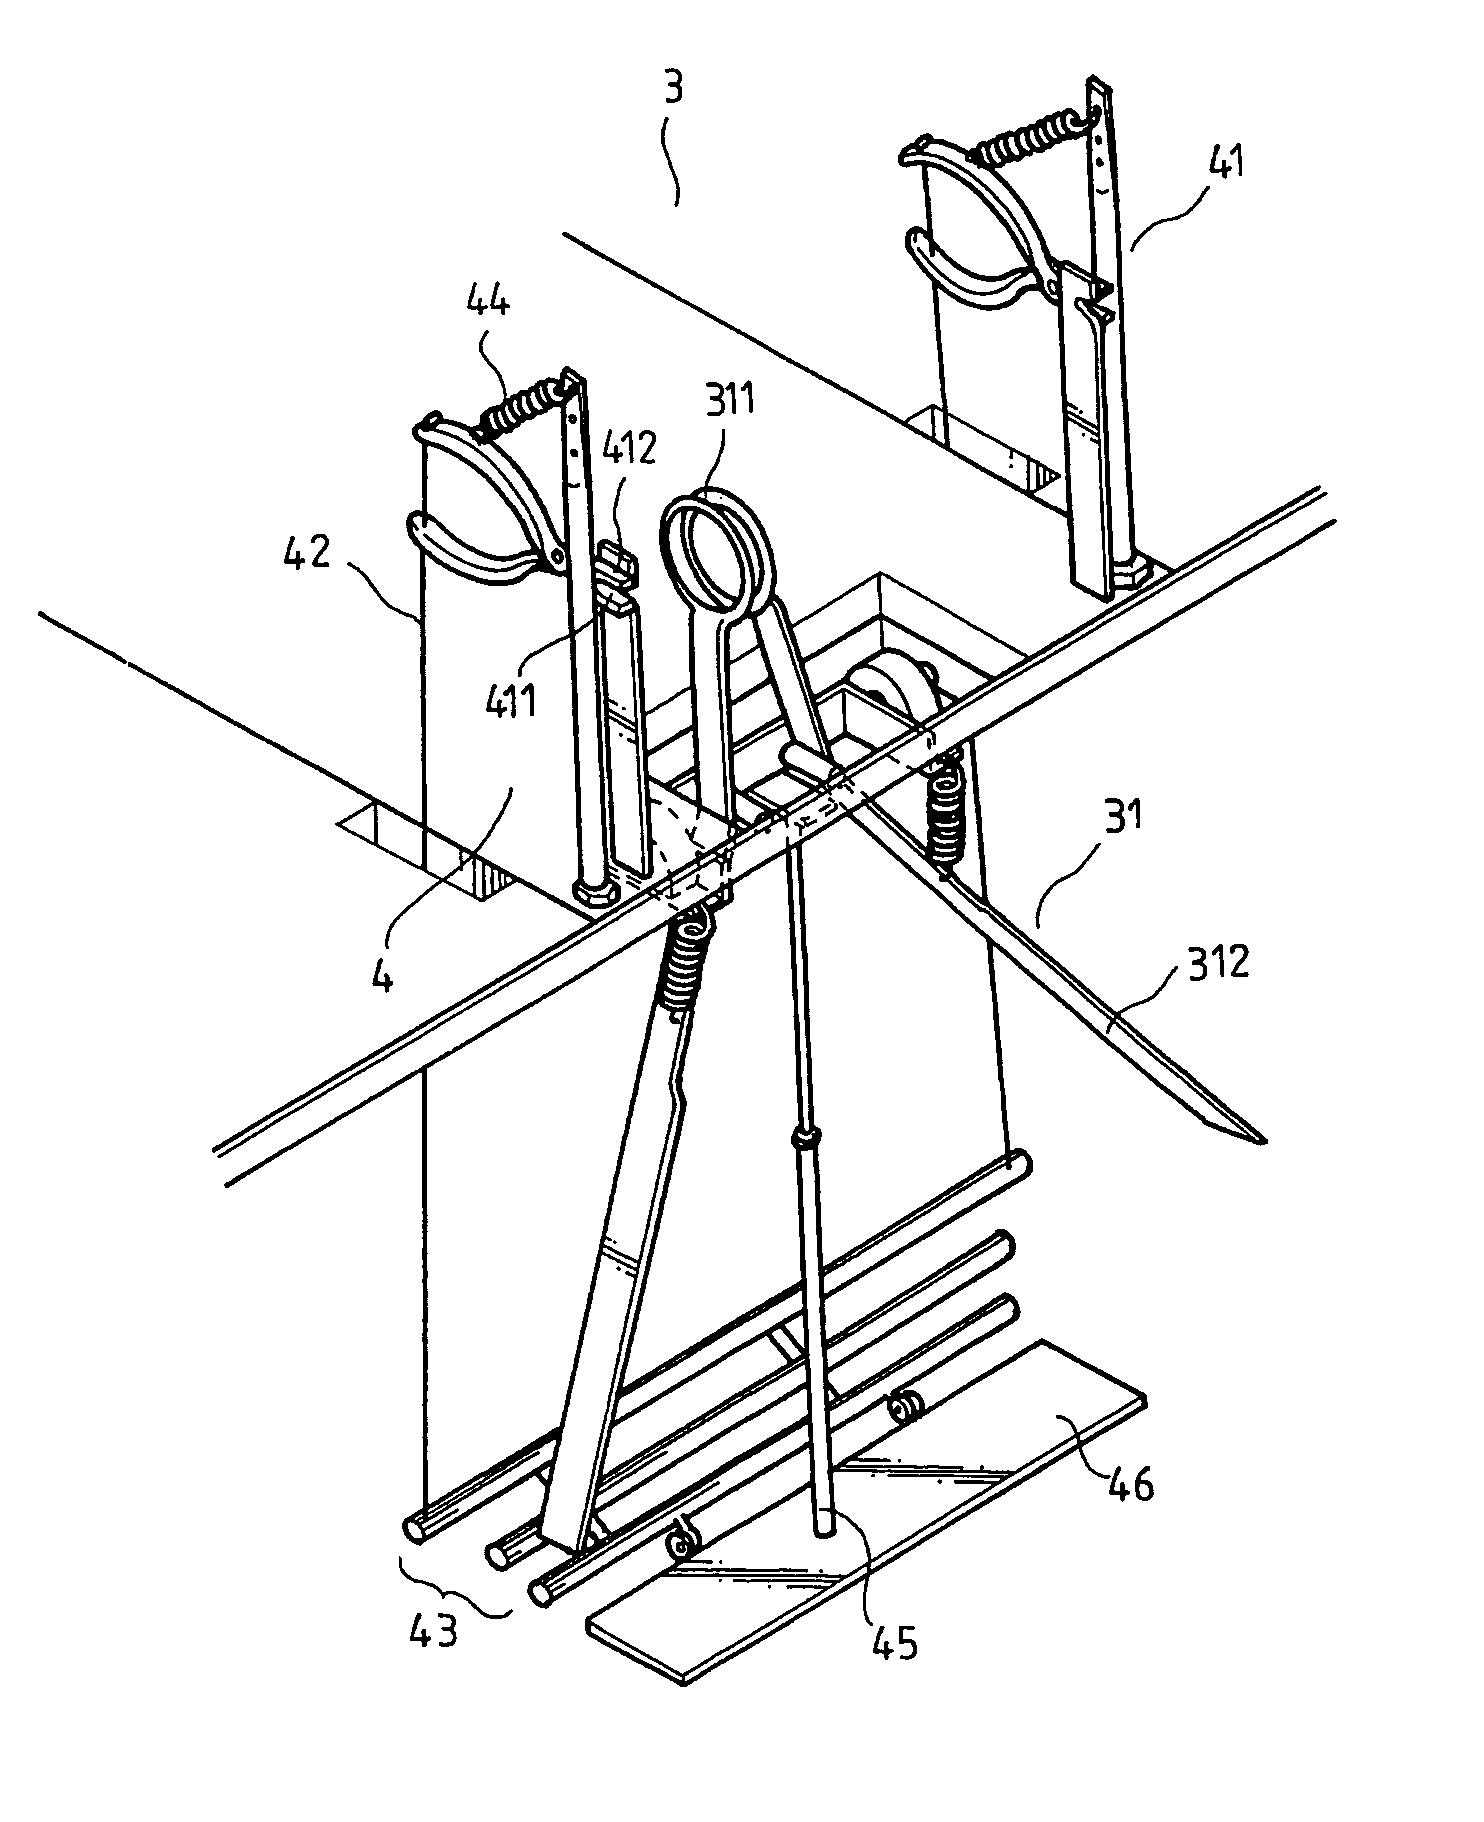 Semi-automatic device for ball stitching machine